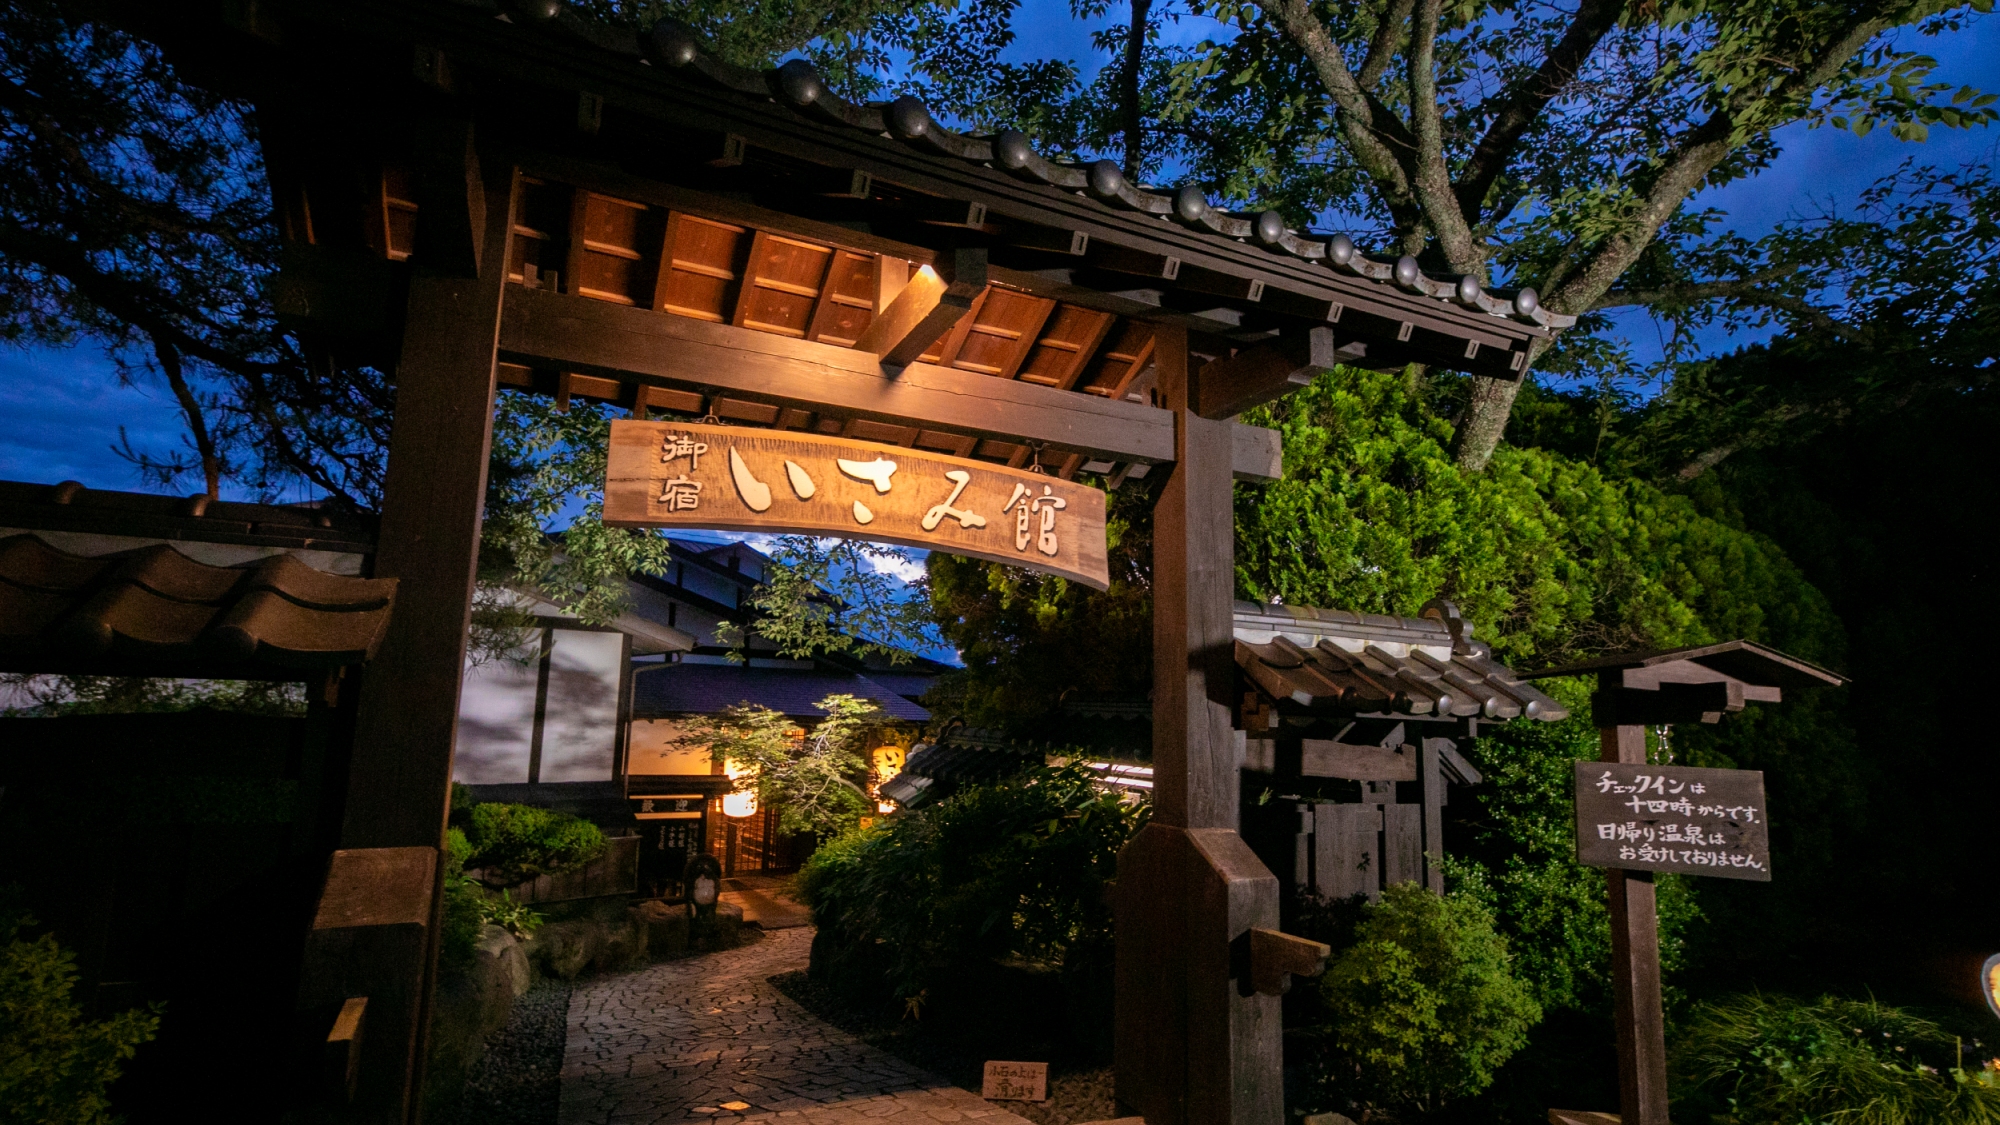 栃木県でガイドブックに紹介されていない素晴らしい温泉宿